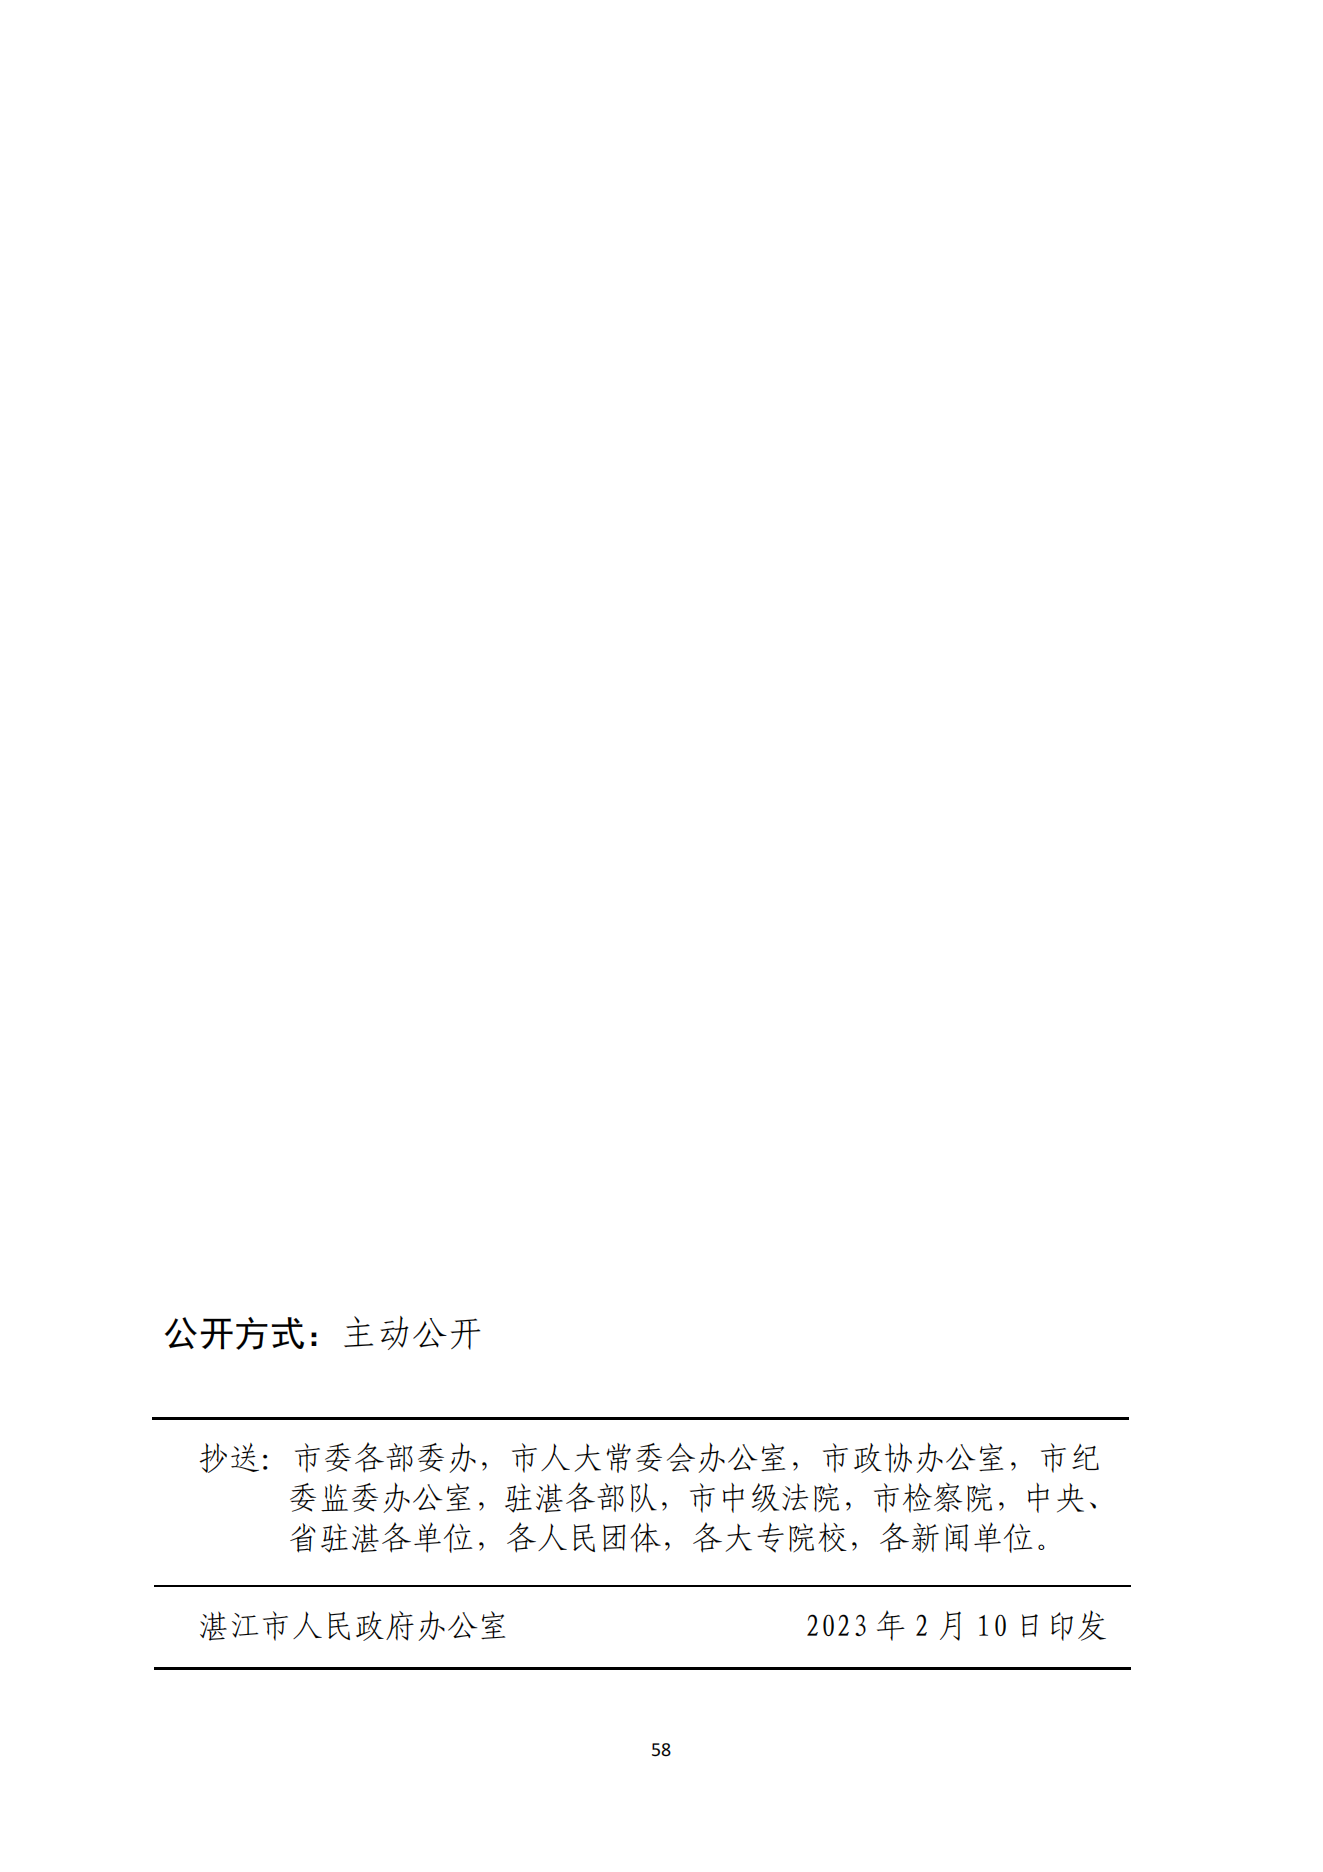 湛江市人民政府办公室关于印发湛江市教育发展“十四五”规划的通知_57.png